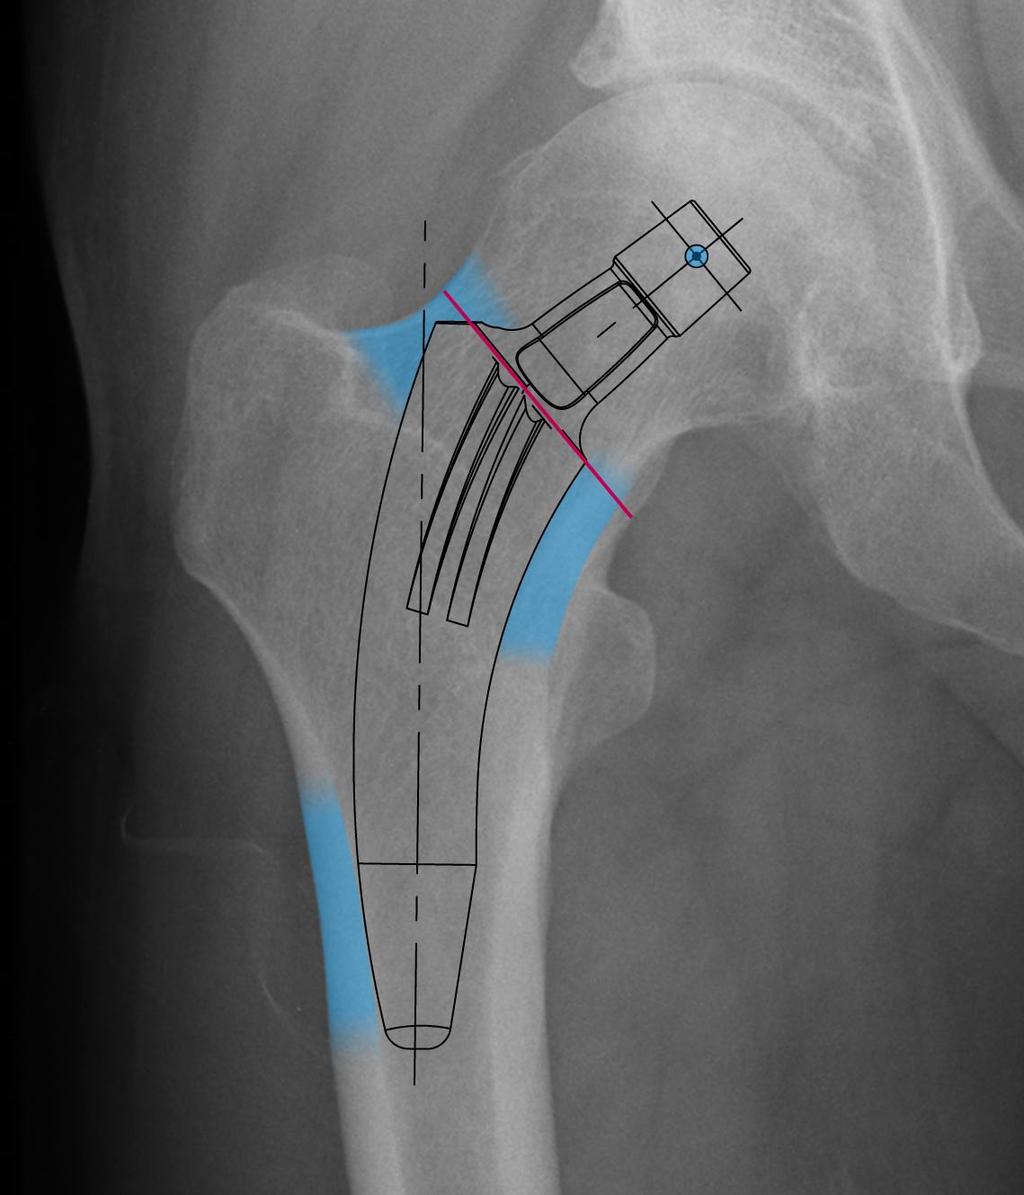 Bei Verwendung des M/L-Röntgenbildes sollte proximaler Kontakt posterior und anterior erzielt werden; distaler Kontakt wiederum posterior.